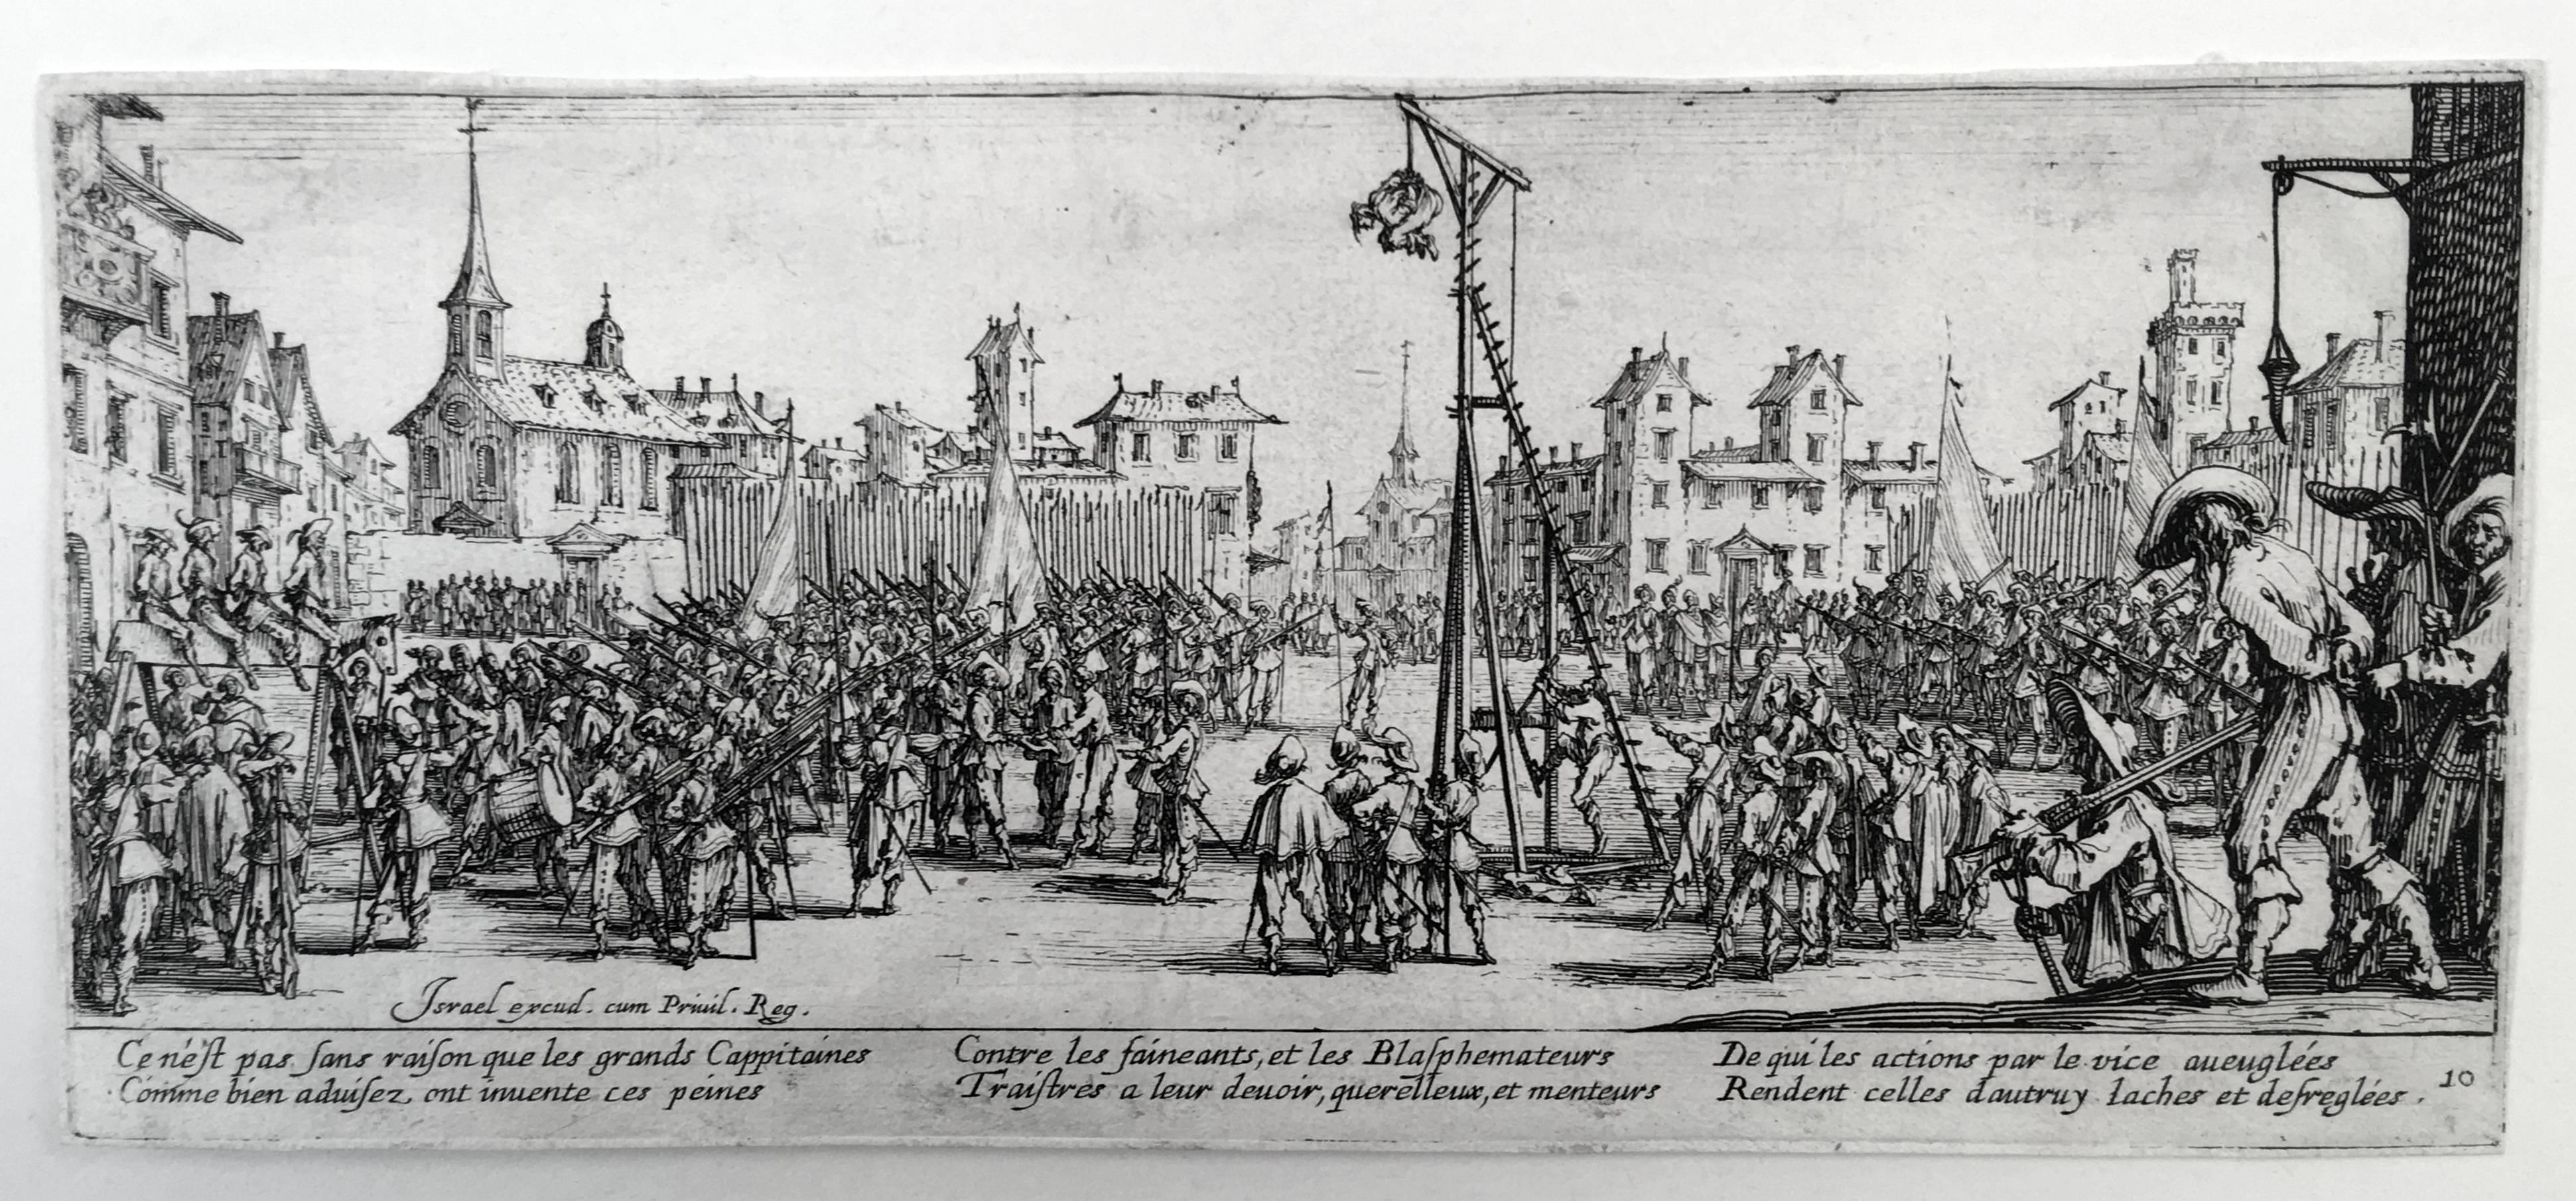 Jacques Callot (1592-1635), Les Grandes Miseres de la Guerre, Radierungen, 1633, der komplette Satz von 18. Lieure 1339-56, das Frontispiz dritter Zustand (von 3), die übrigen Abzüge zweiter Zustand (von 3). In sehr gutem Zustand, mit schmalen oder